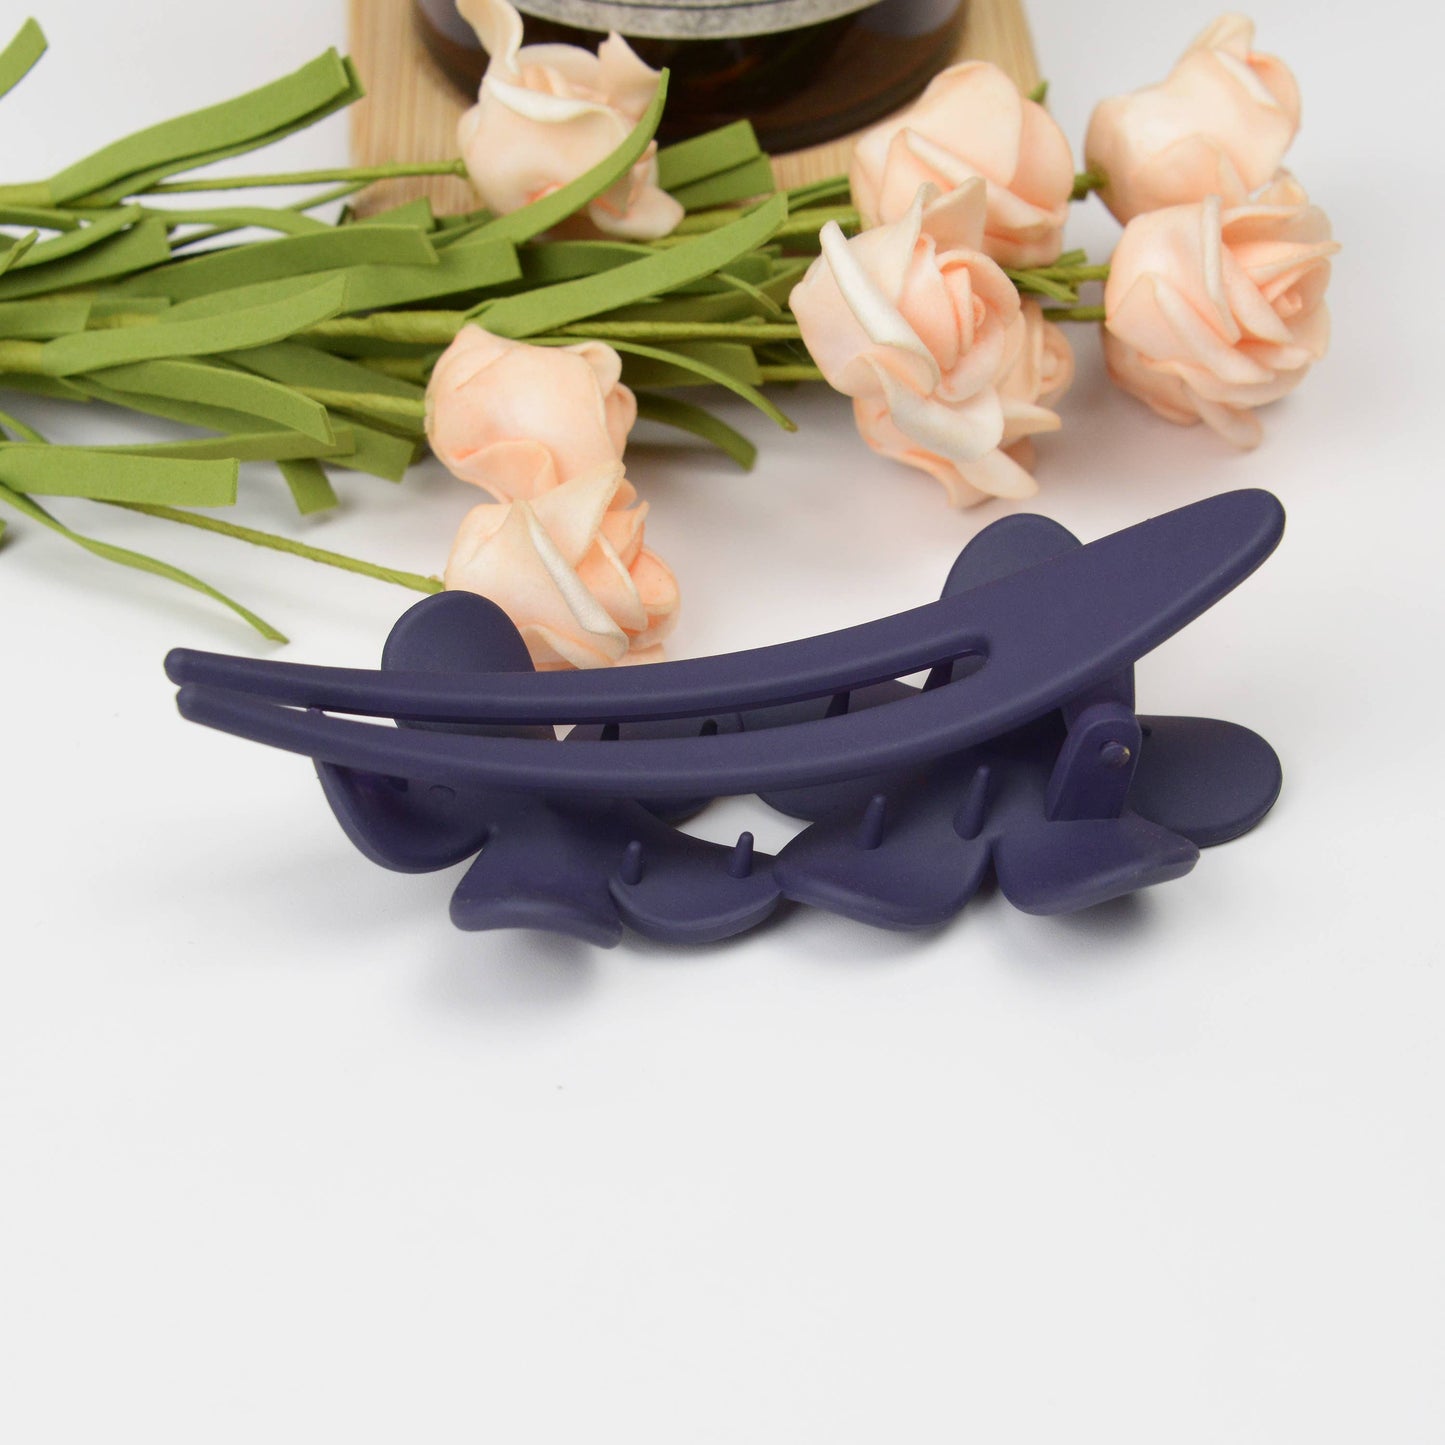 SoapElenGlen - Fashion flower duckbill hair clip